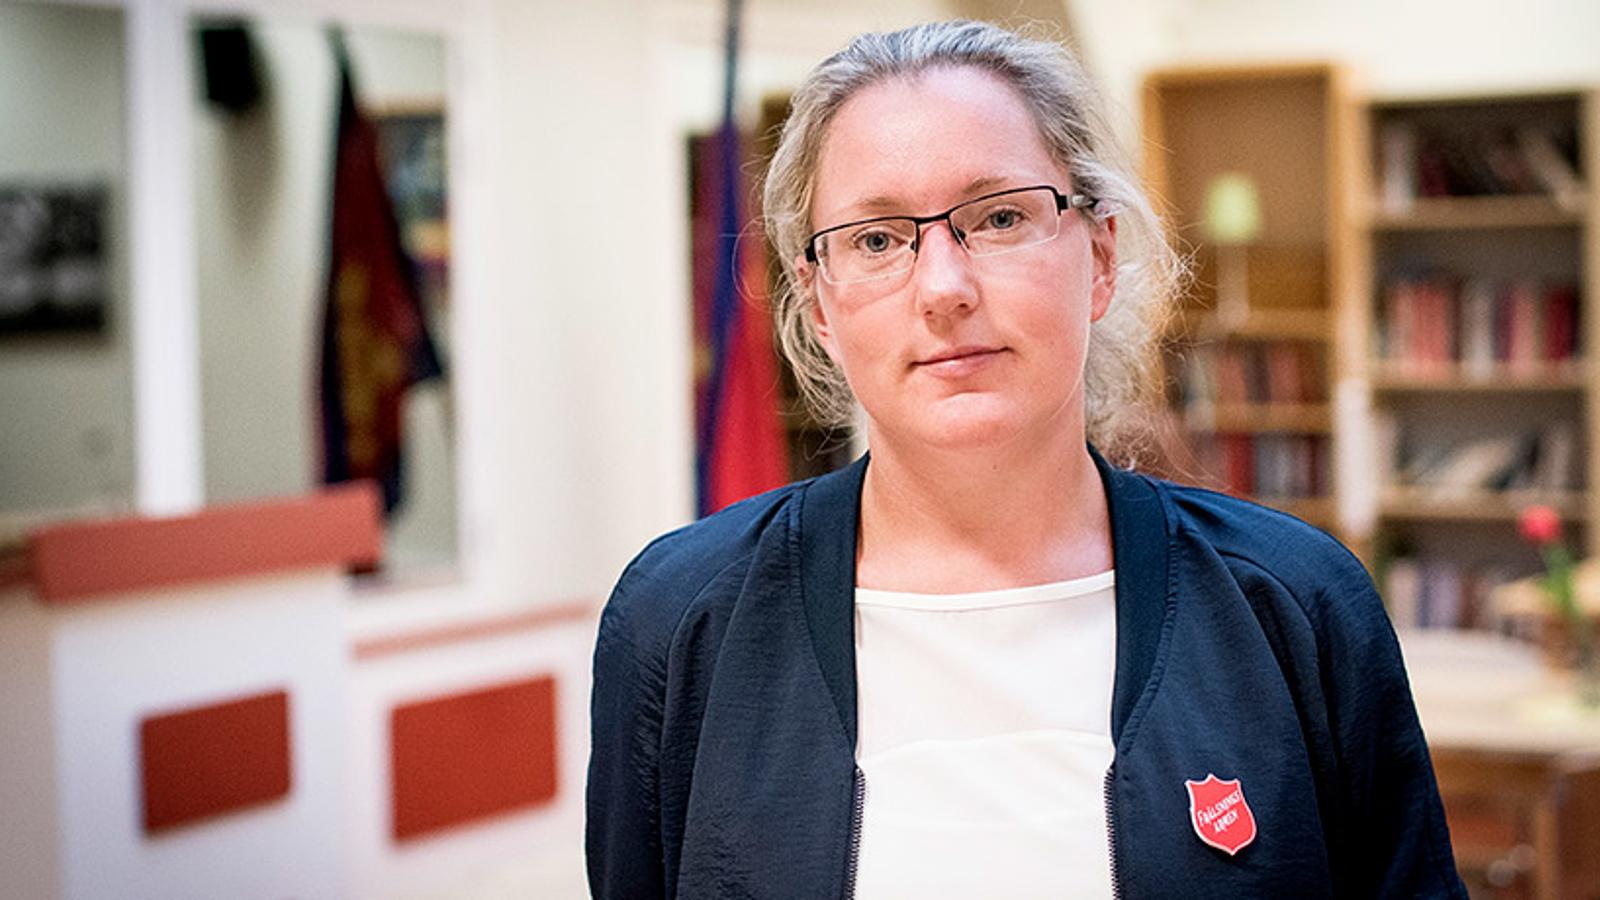 Bodil Nilsson som är verksamhetschef på Sociala centret. Hon ler mot kameran. I bakgrunden syns två bokhyllor och två röda flaggor.